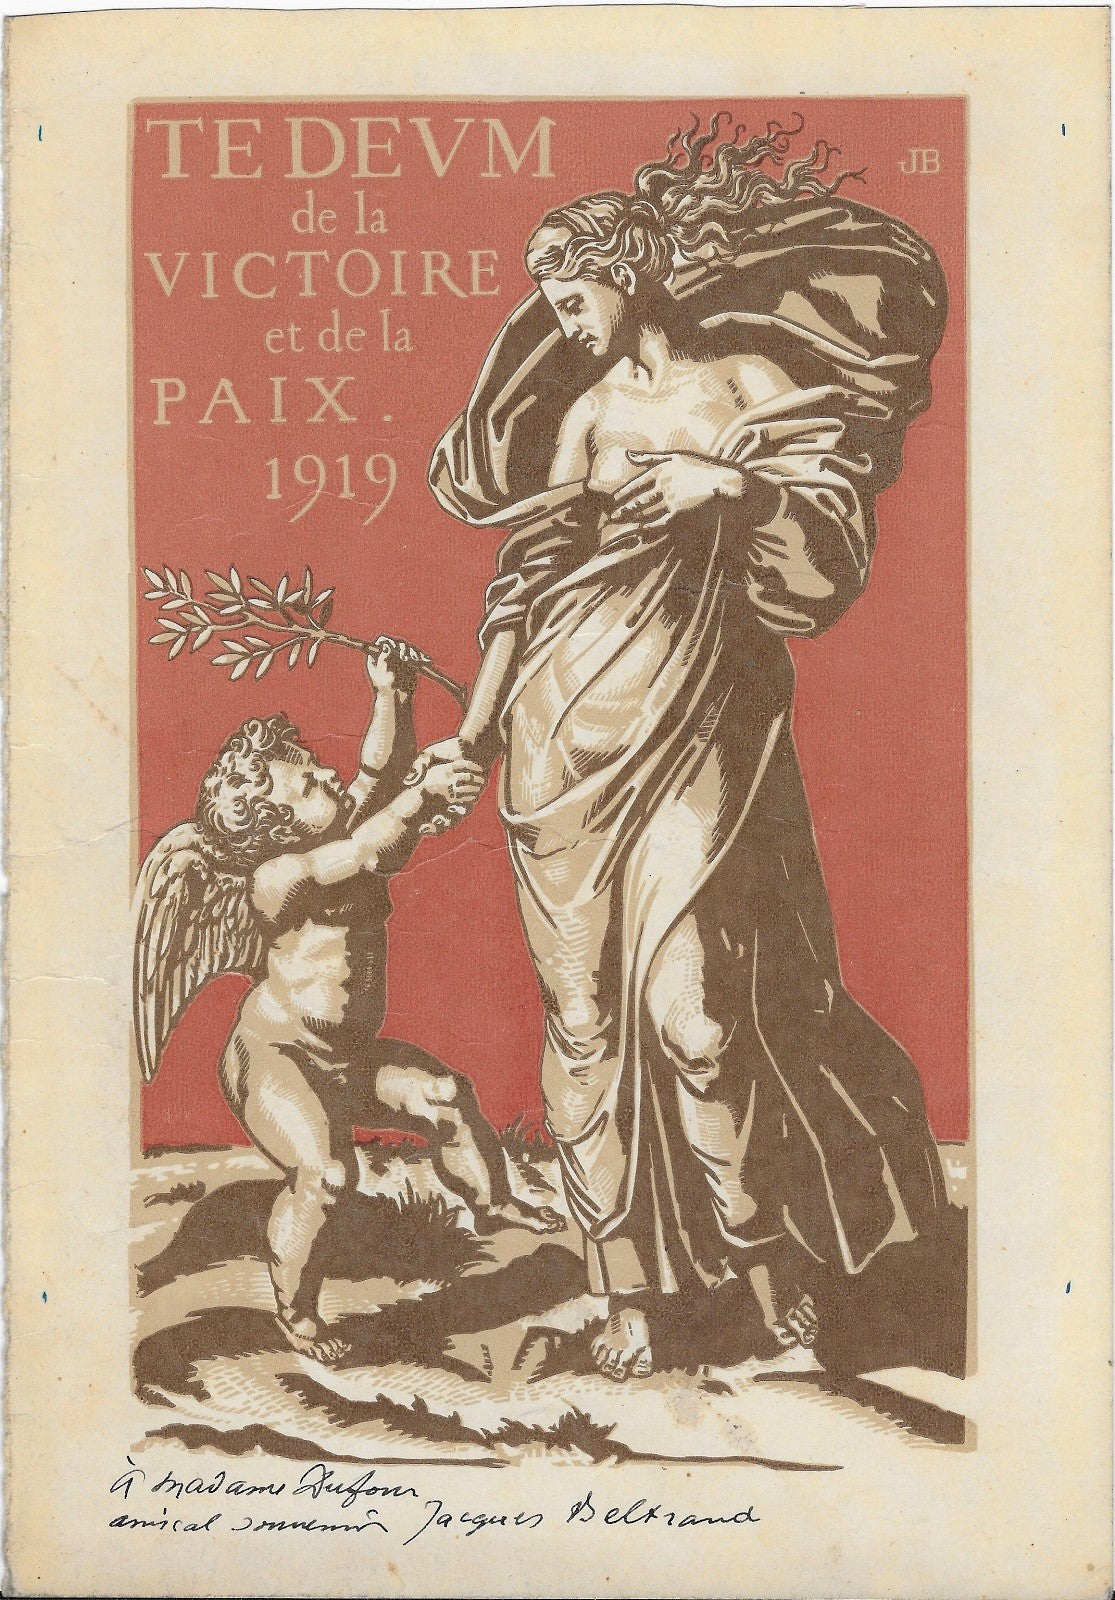 Beltrand Te Deum de la Victoire et de la Paix 1919